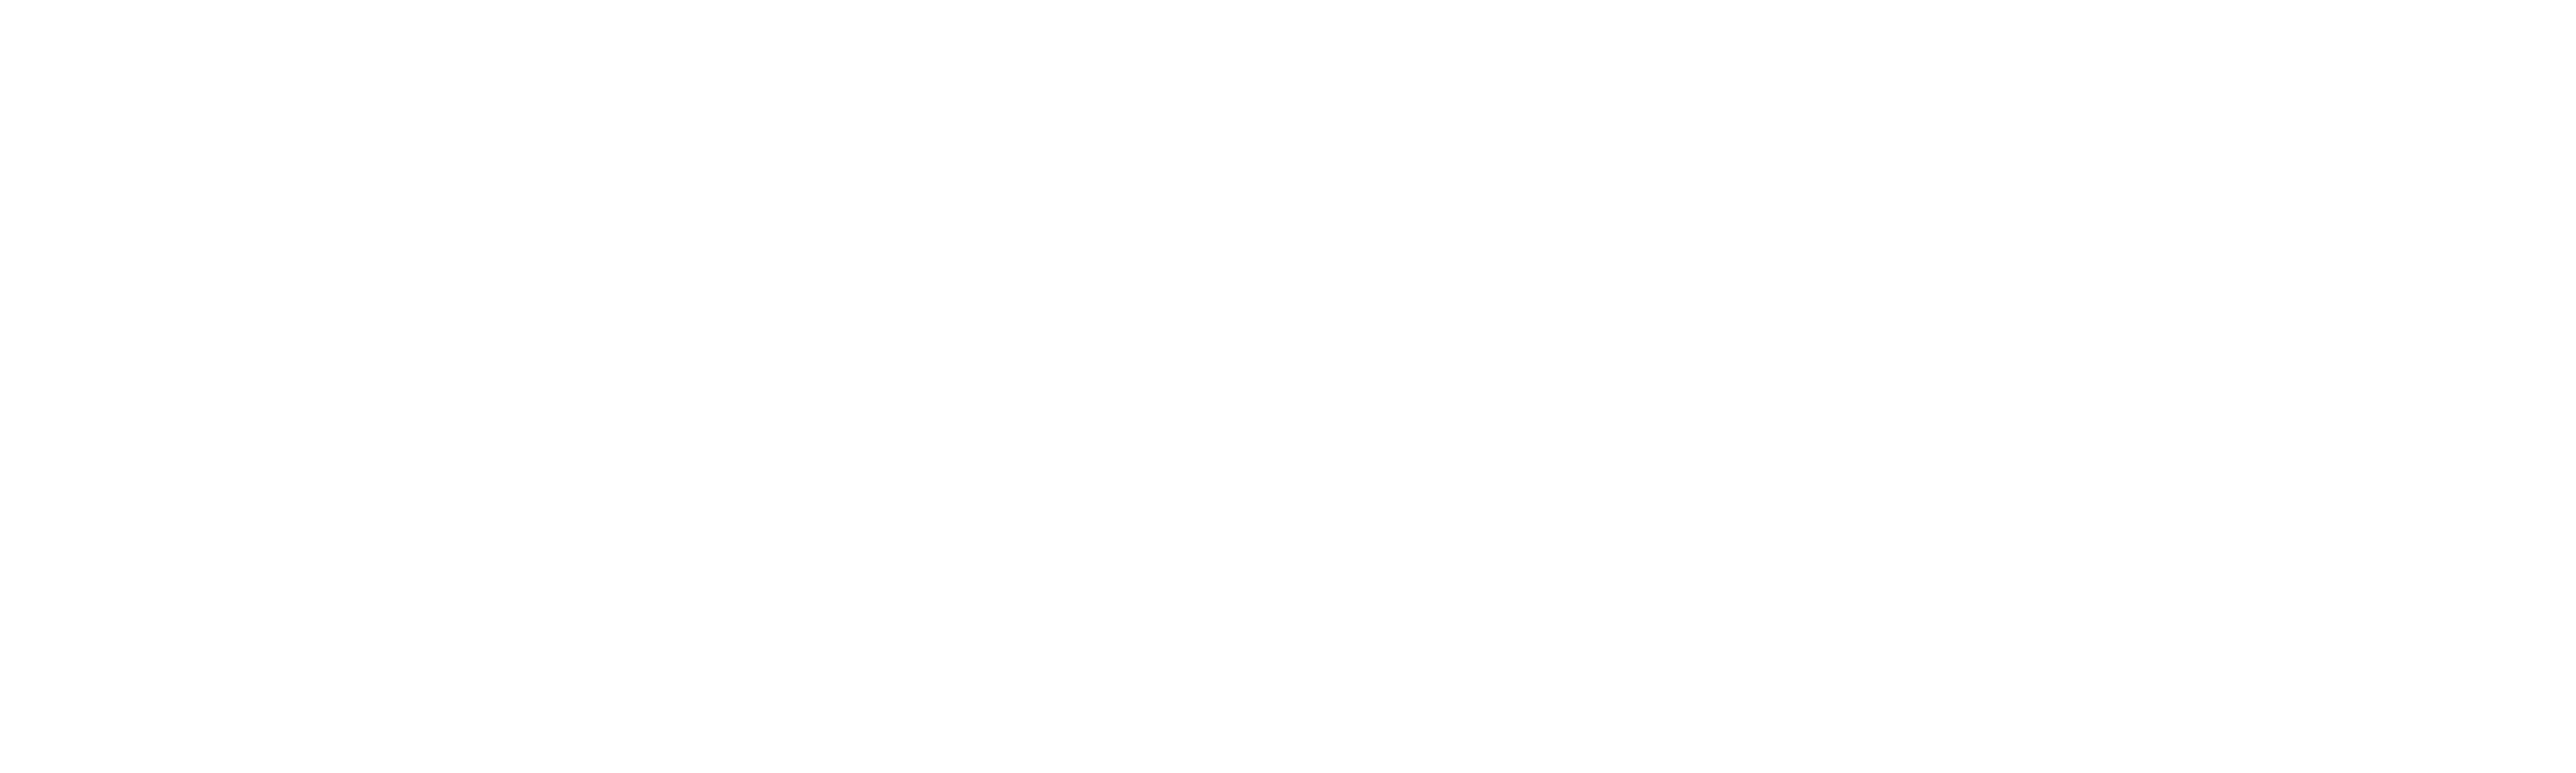 streetwise retail advisors logo white